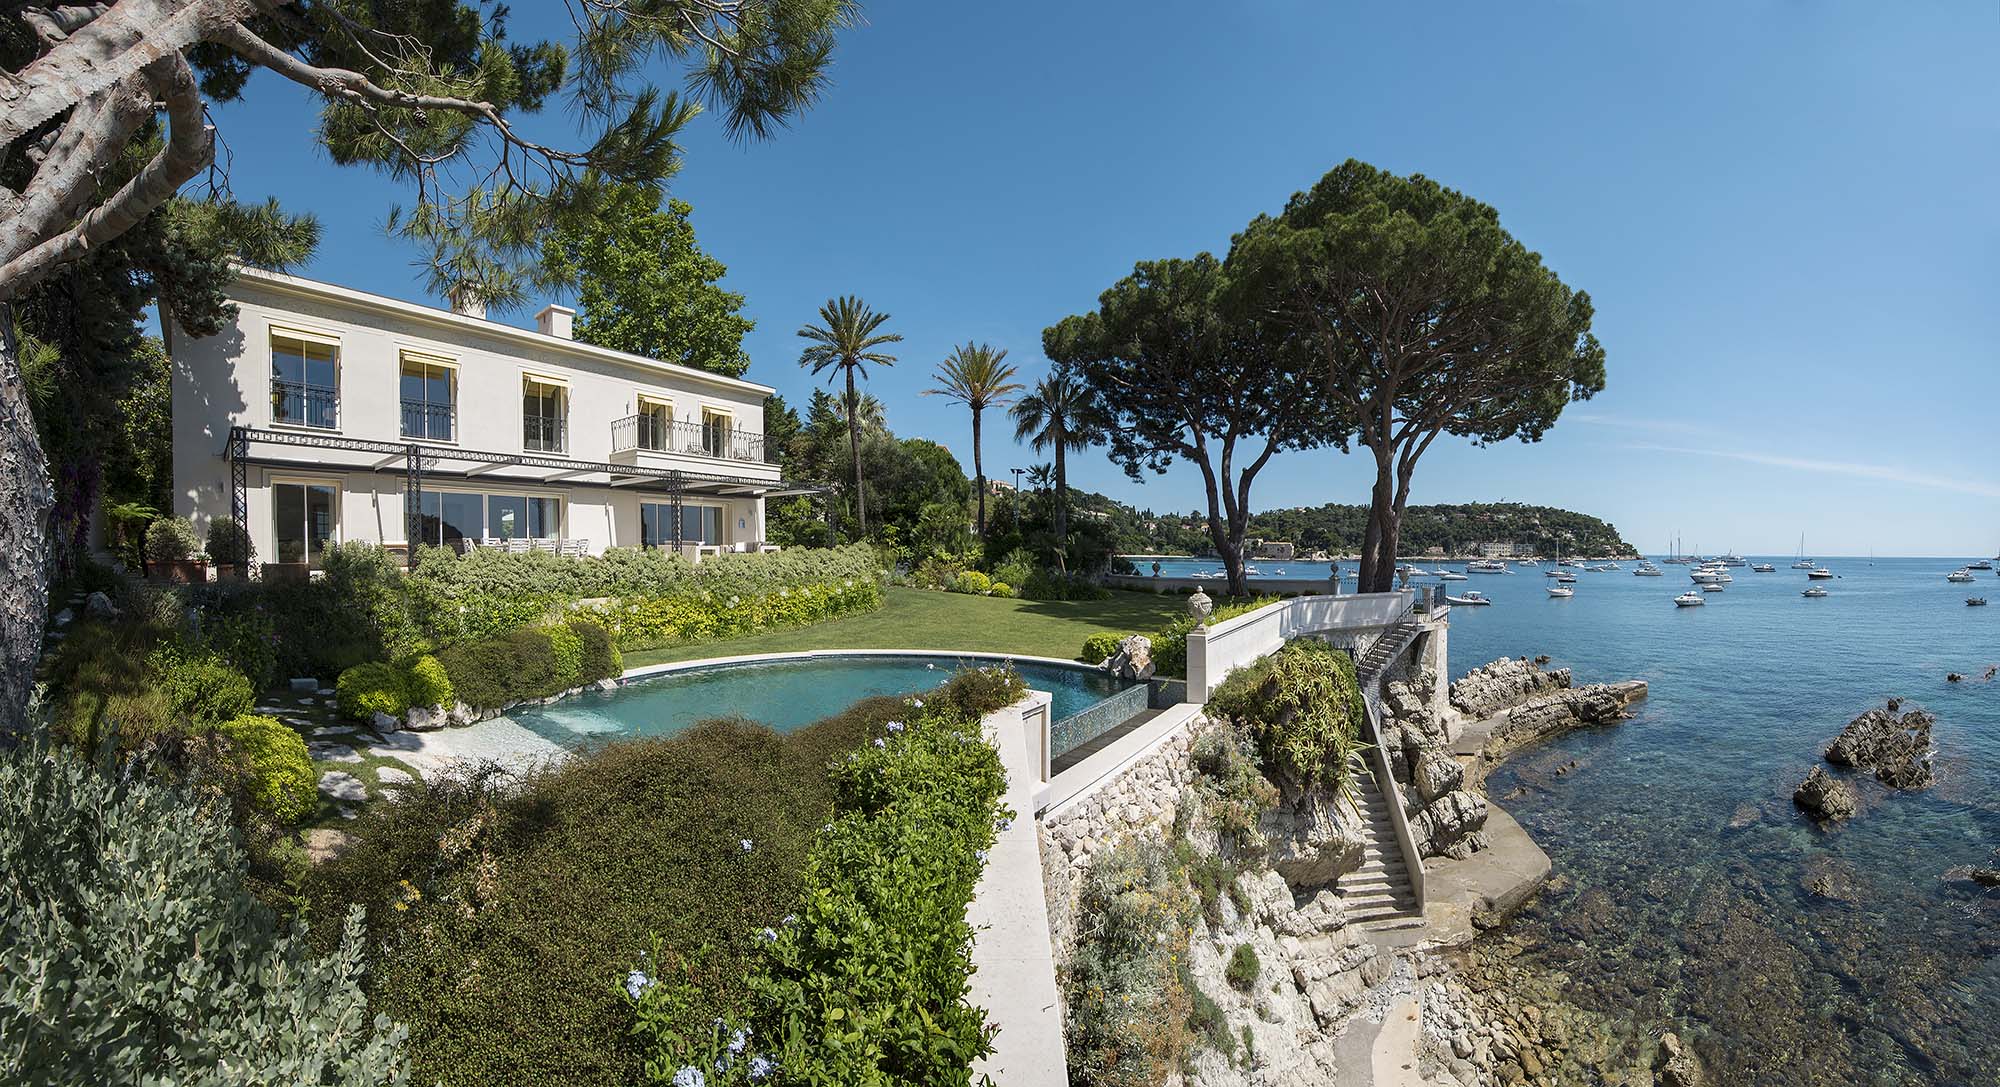 Villa Ruby is a stunning luxury villa in Villefranche-sur-Mer, Cote d’Azur.